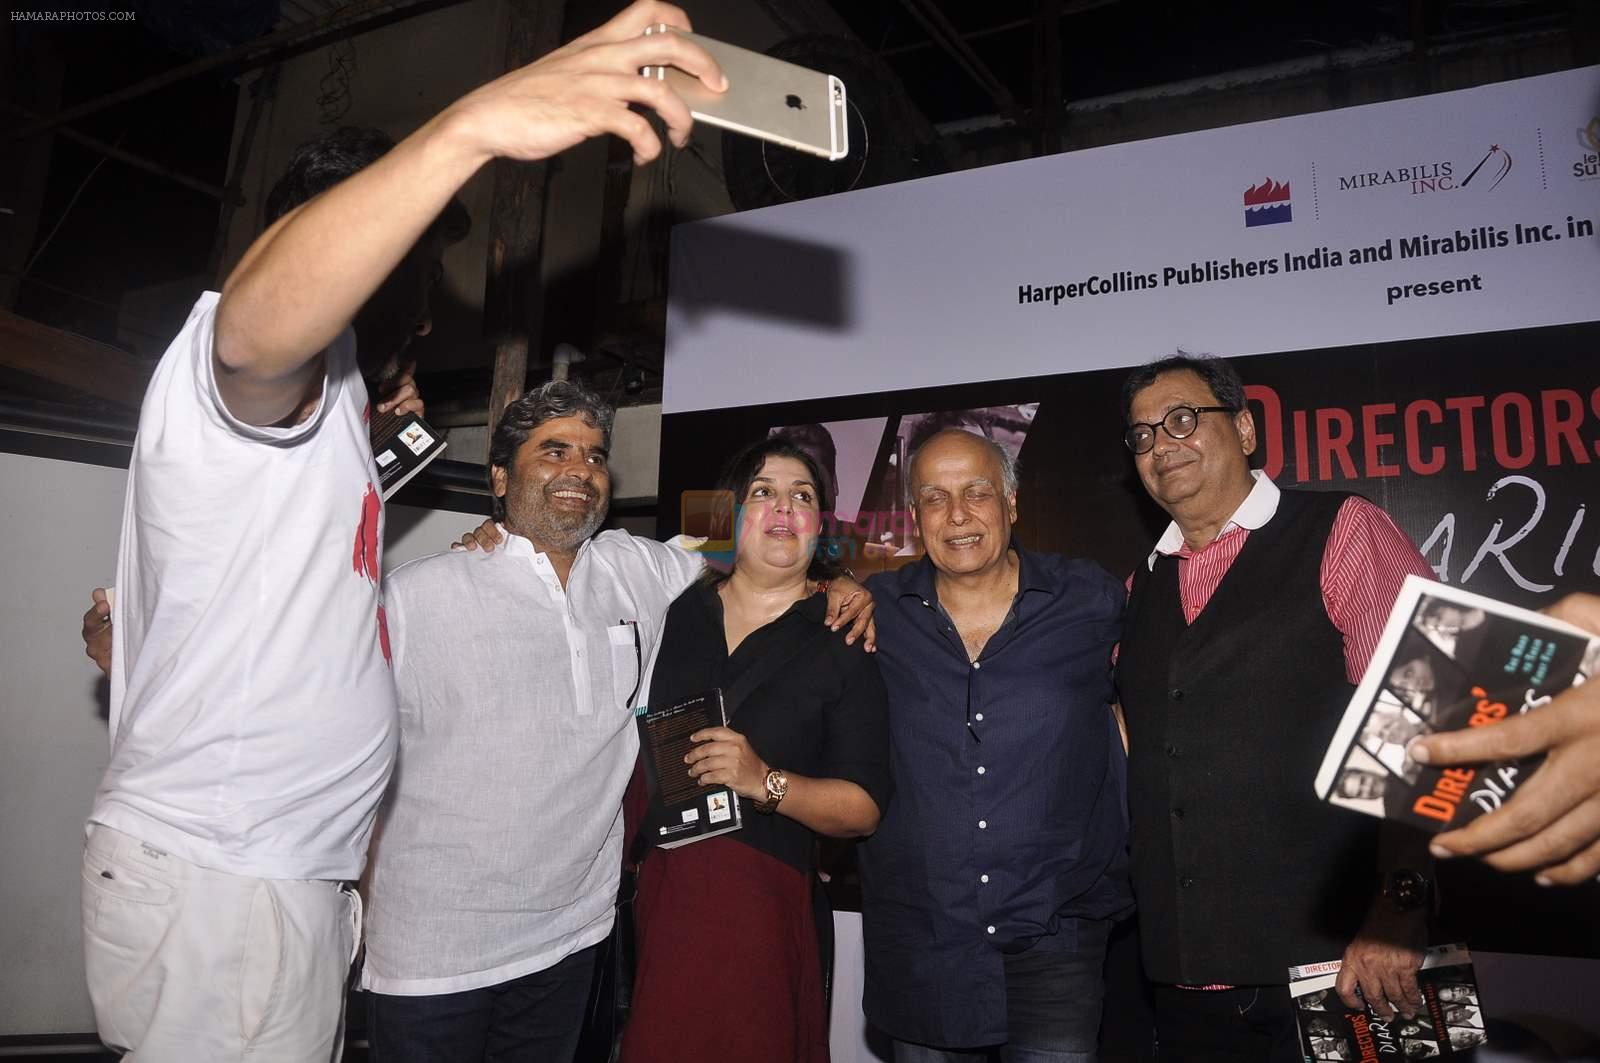 Vishal Bharadwaj, Abhishek Kapoor, Mahesh Bhatt, Farah Khan, Subhash Ghai at Director's Diaries book launch  in Mumbai on 9th Aug 2015